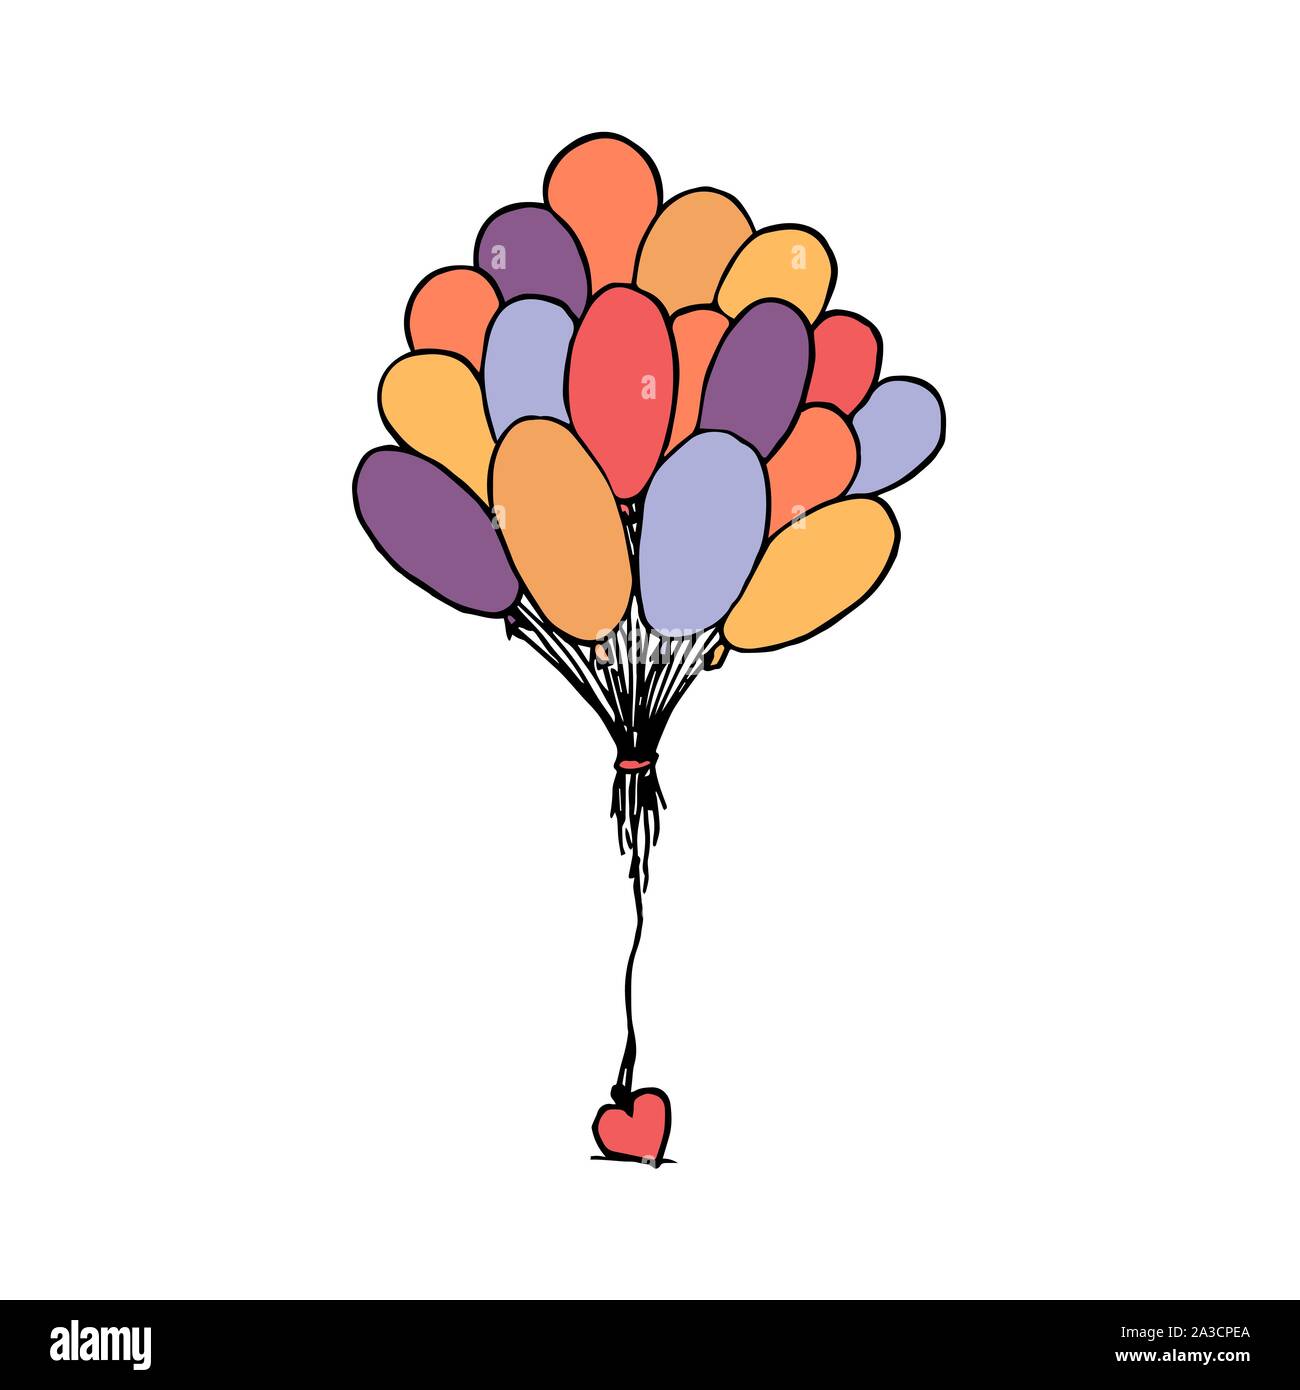 Bündel Luftballons zusammen mit Herz gebunden. Bunte Umrisse auf weißem Hintergrund. Bild kann in Grußkarten, Poster, Flyer, Banner, Logo verwendet werden, die weitere Gestaltung etc. Vector Illustration. EPS 10. Stock Vektor